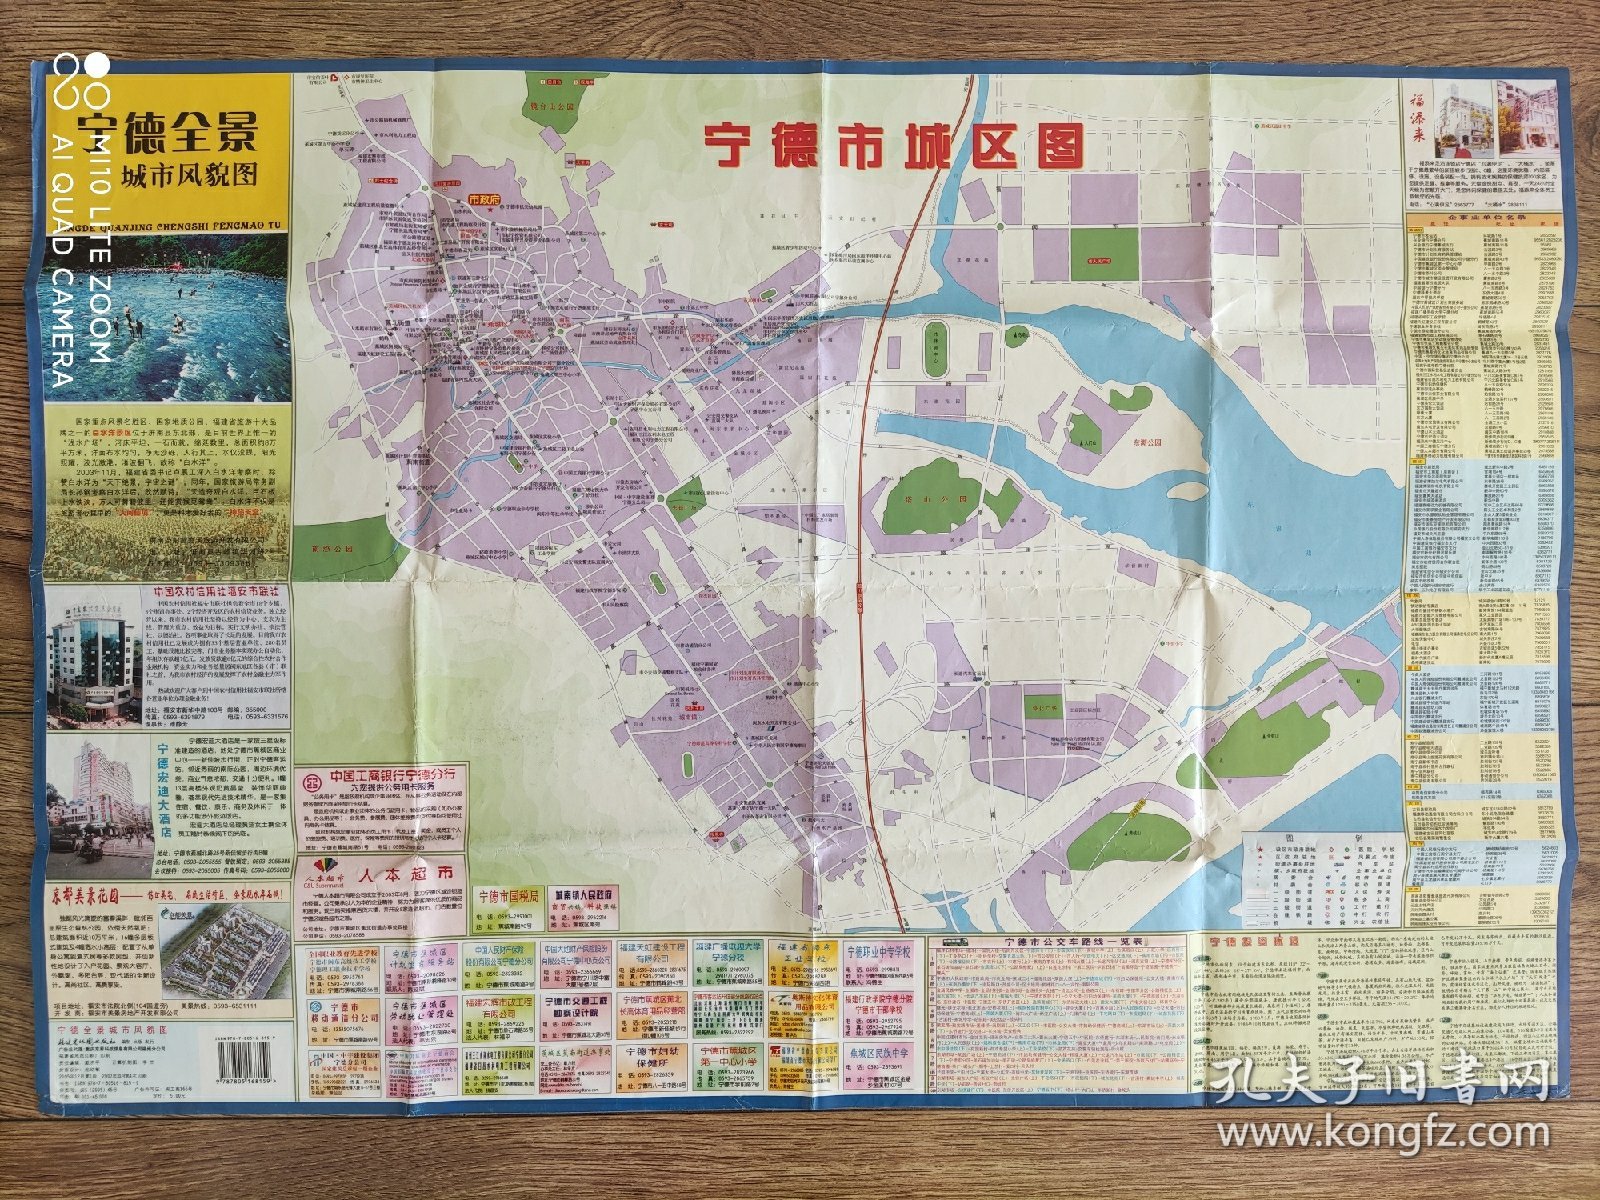 【旧地图】宁德全景城市风貌图 2开 2007年版